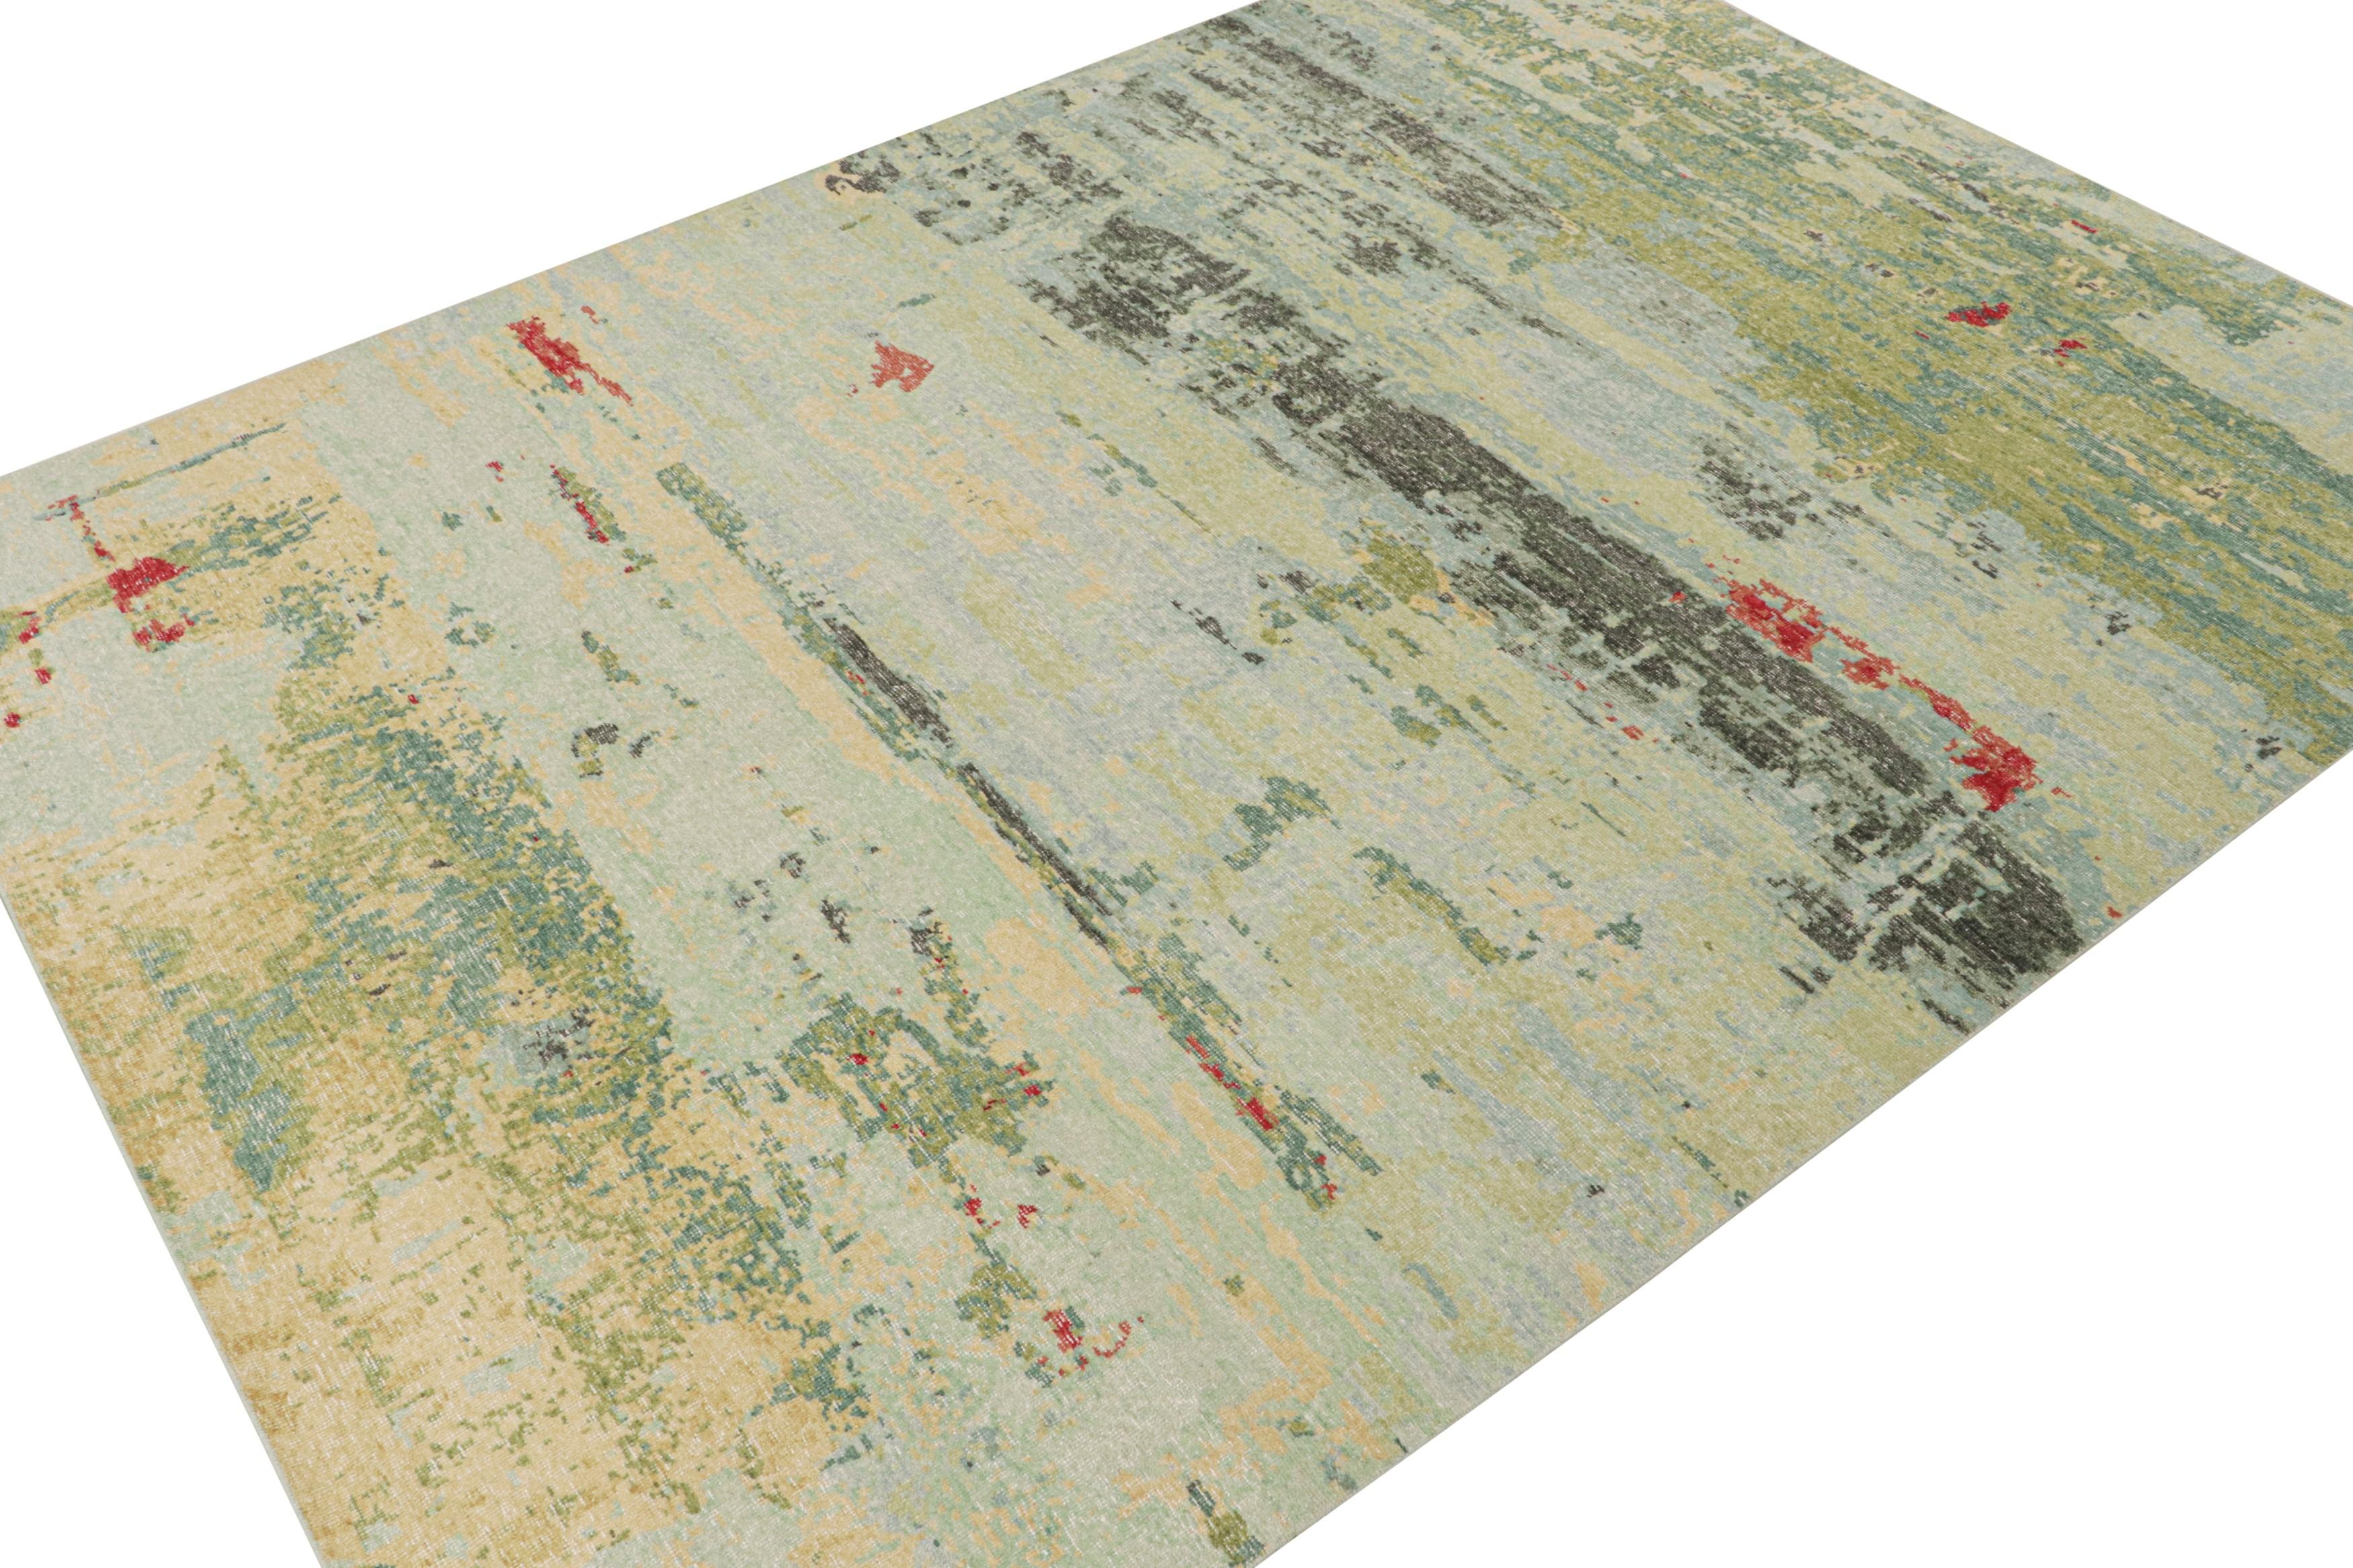 Dieser zeitgenössische abstrakte Teppich im Format 9x12 ist ein Neuzugang in der Homage Collection'S von Rug & Kilim.

Weiter zum Design:

Das aus Wolle und Baumwolle handgeknüpfte Design zeichnet sich durch ein fließendes Spiel von polychromen